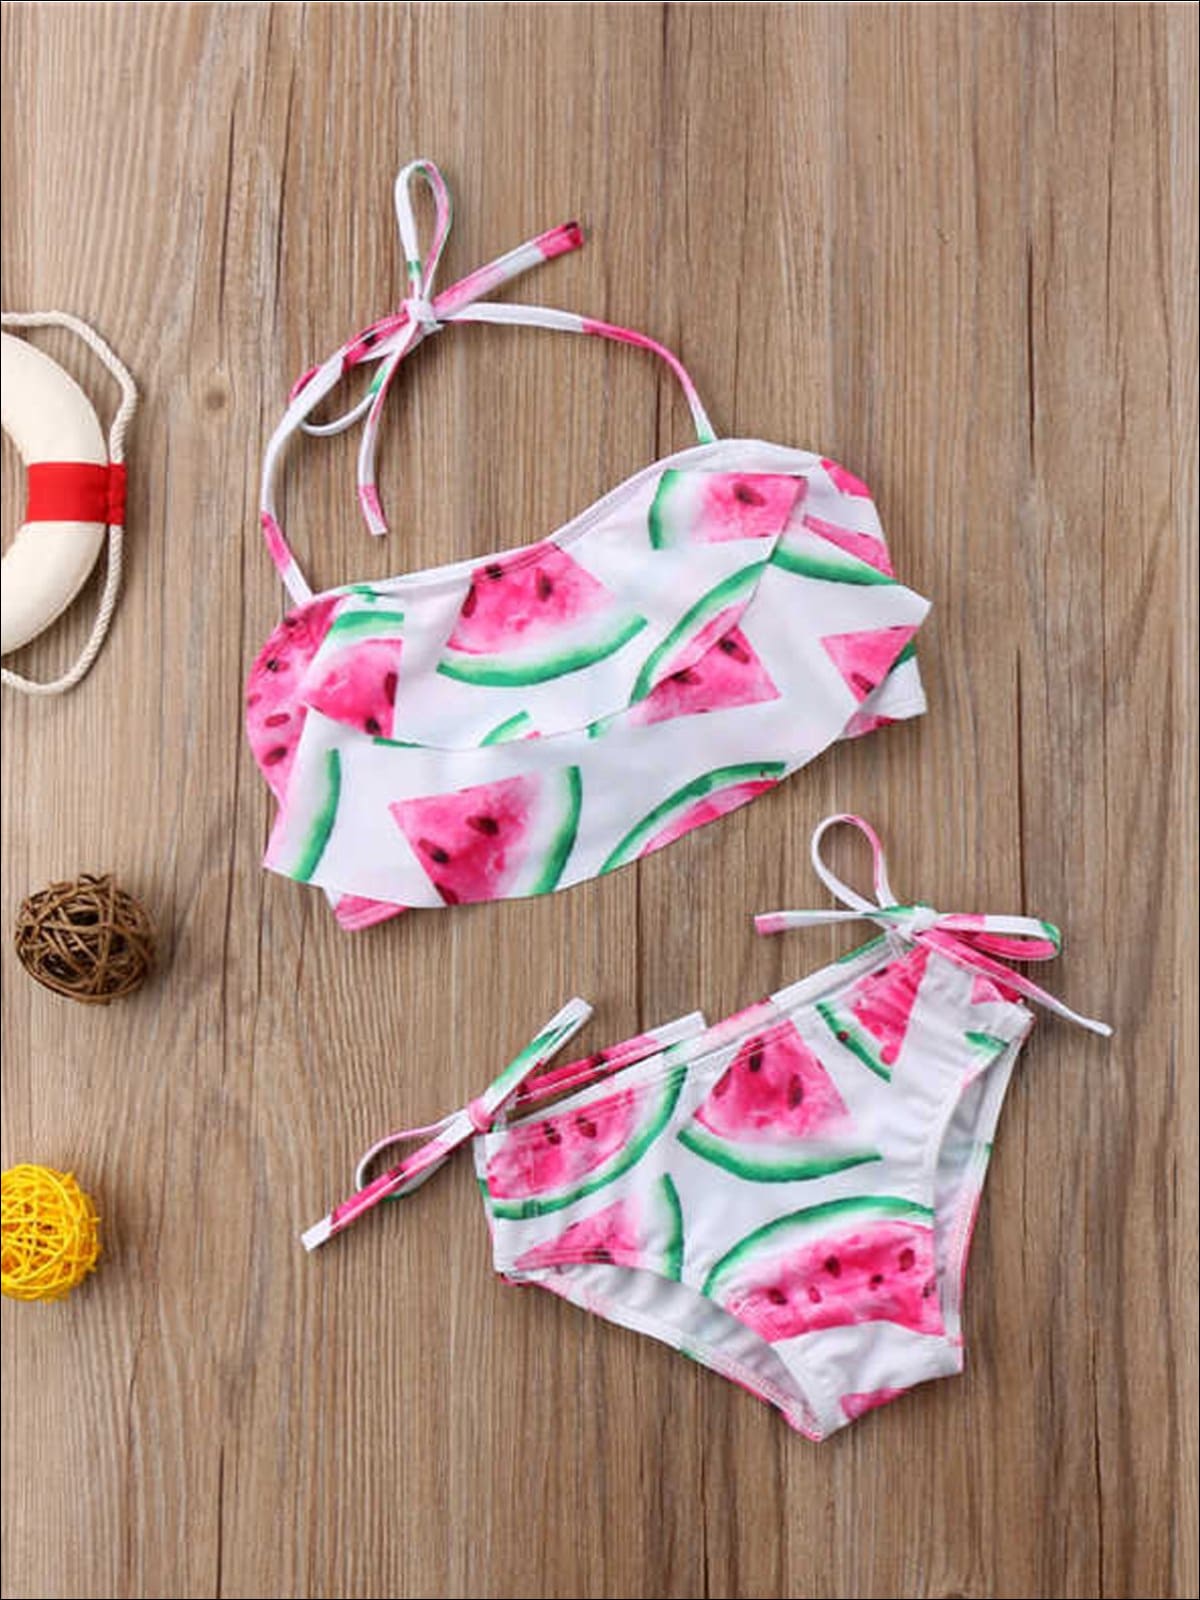 Girls Watermelon Print Self-Tie Two Piece Swimsuit - 4T / White - Girls Two Piece Swimsuit